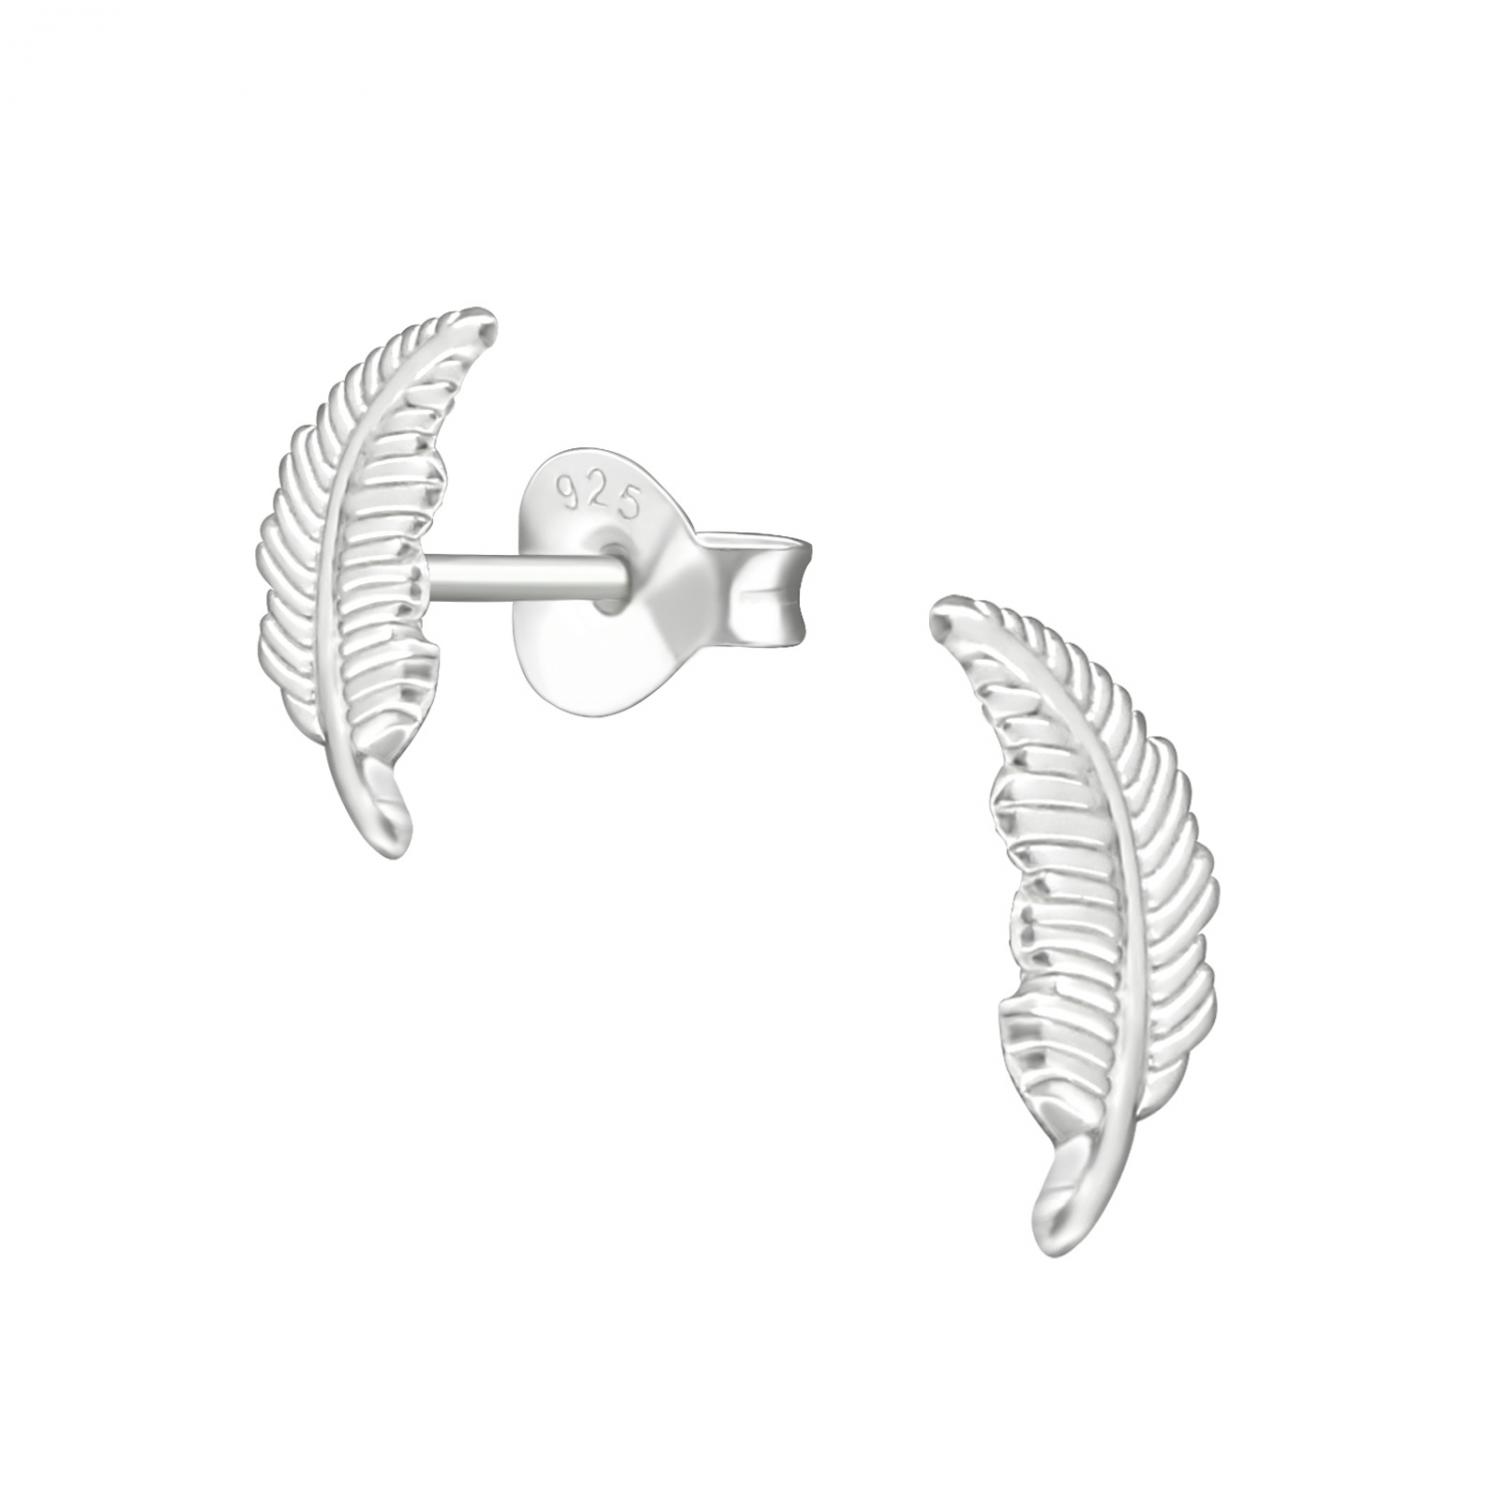 Studs örhänge i silver med motiv av en fjäder. örhängena är nickelfria.